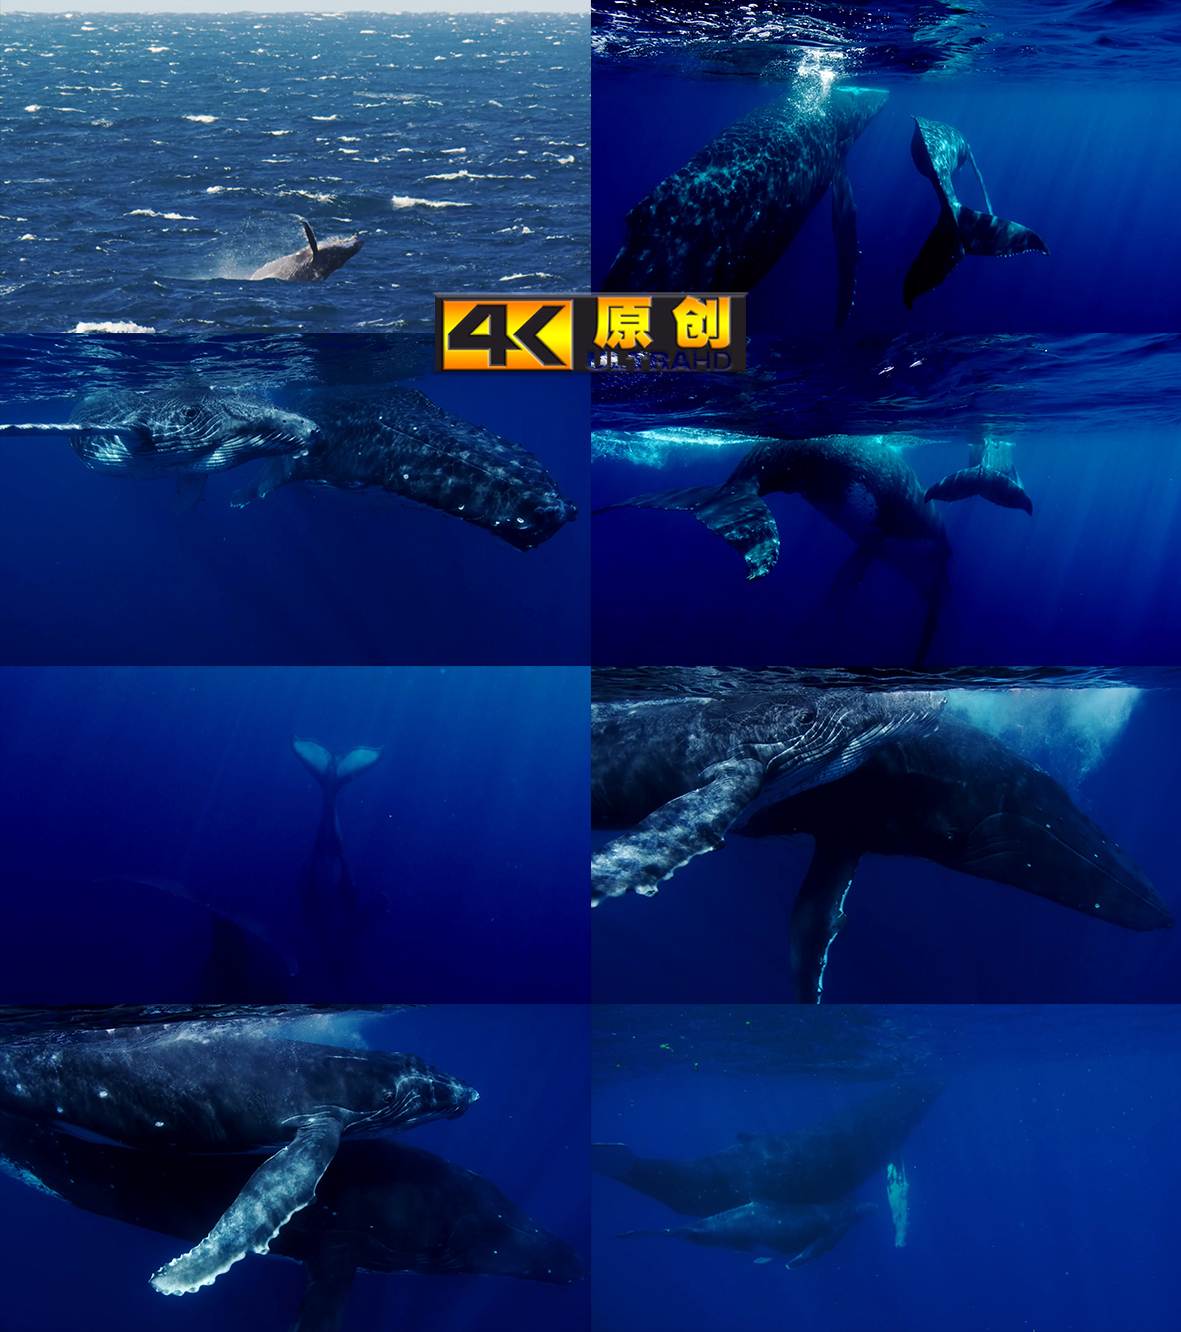 鲸鱼跳跃蓝鲸座头鲸深海探索唯美海洋